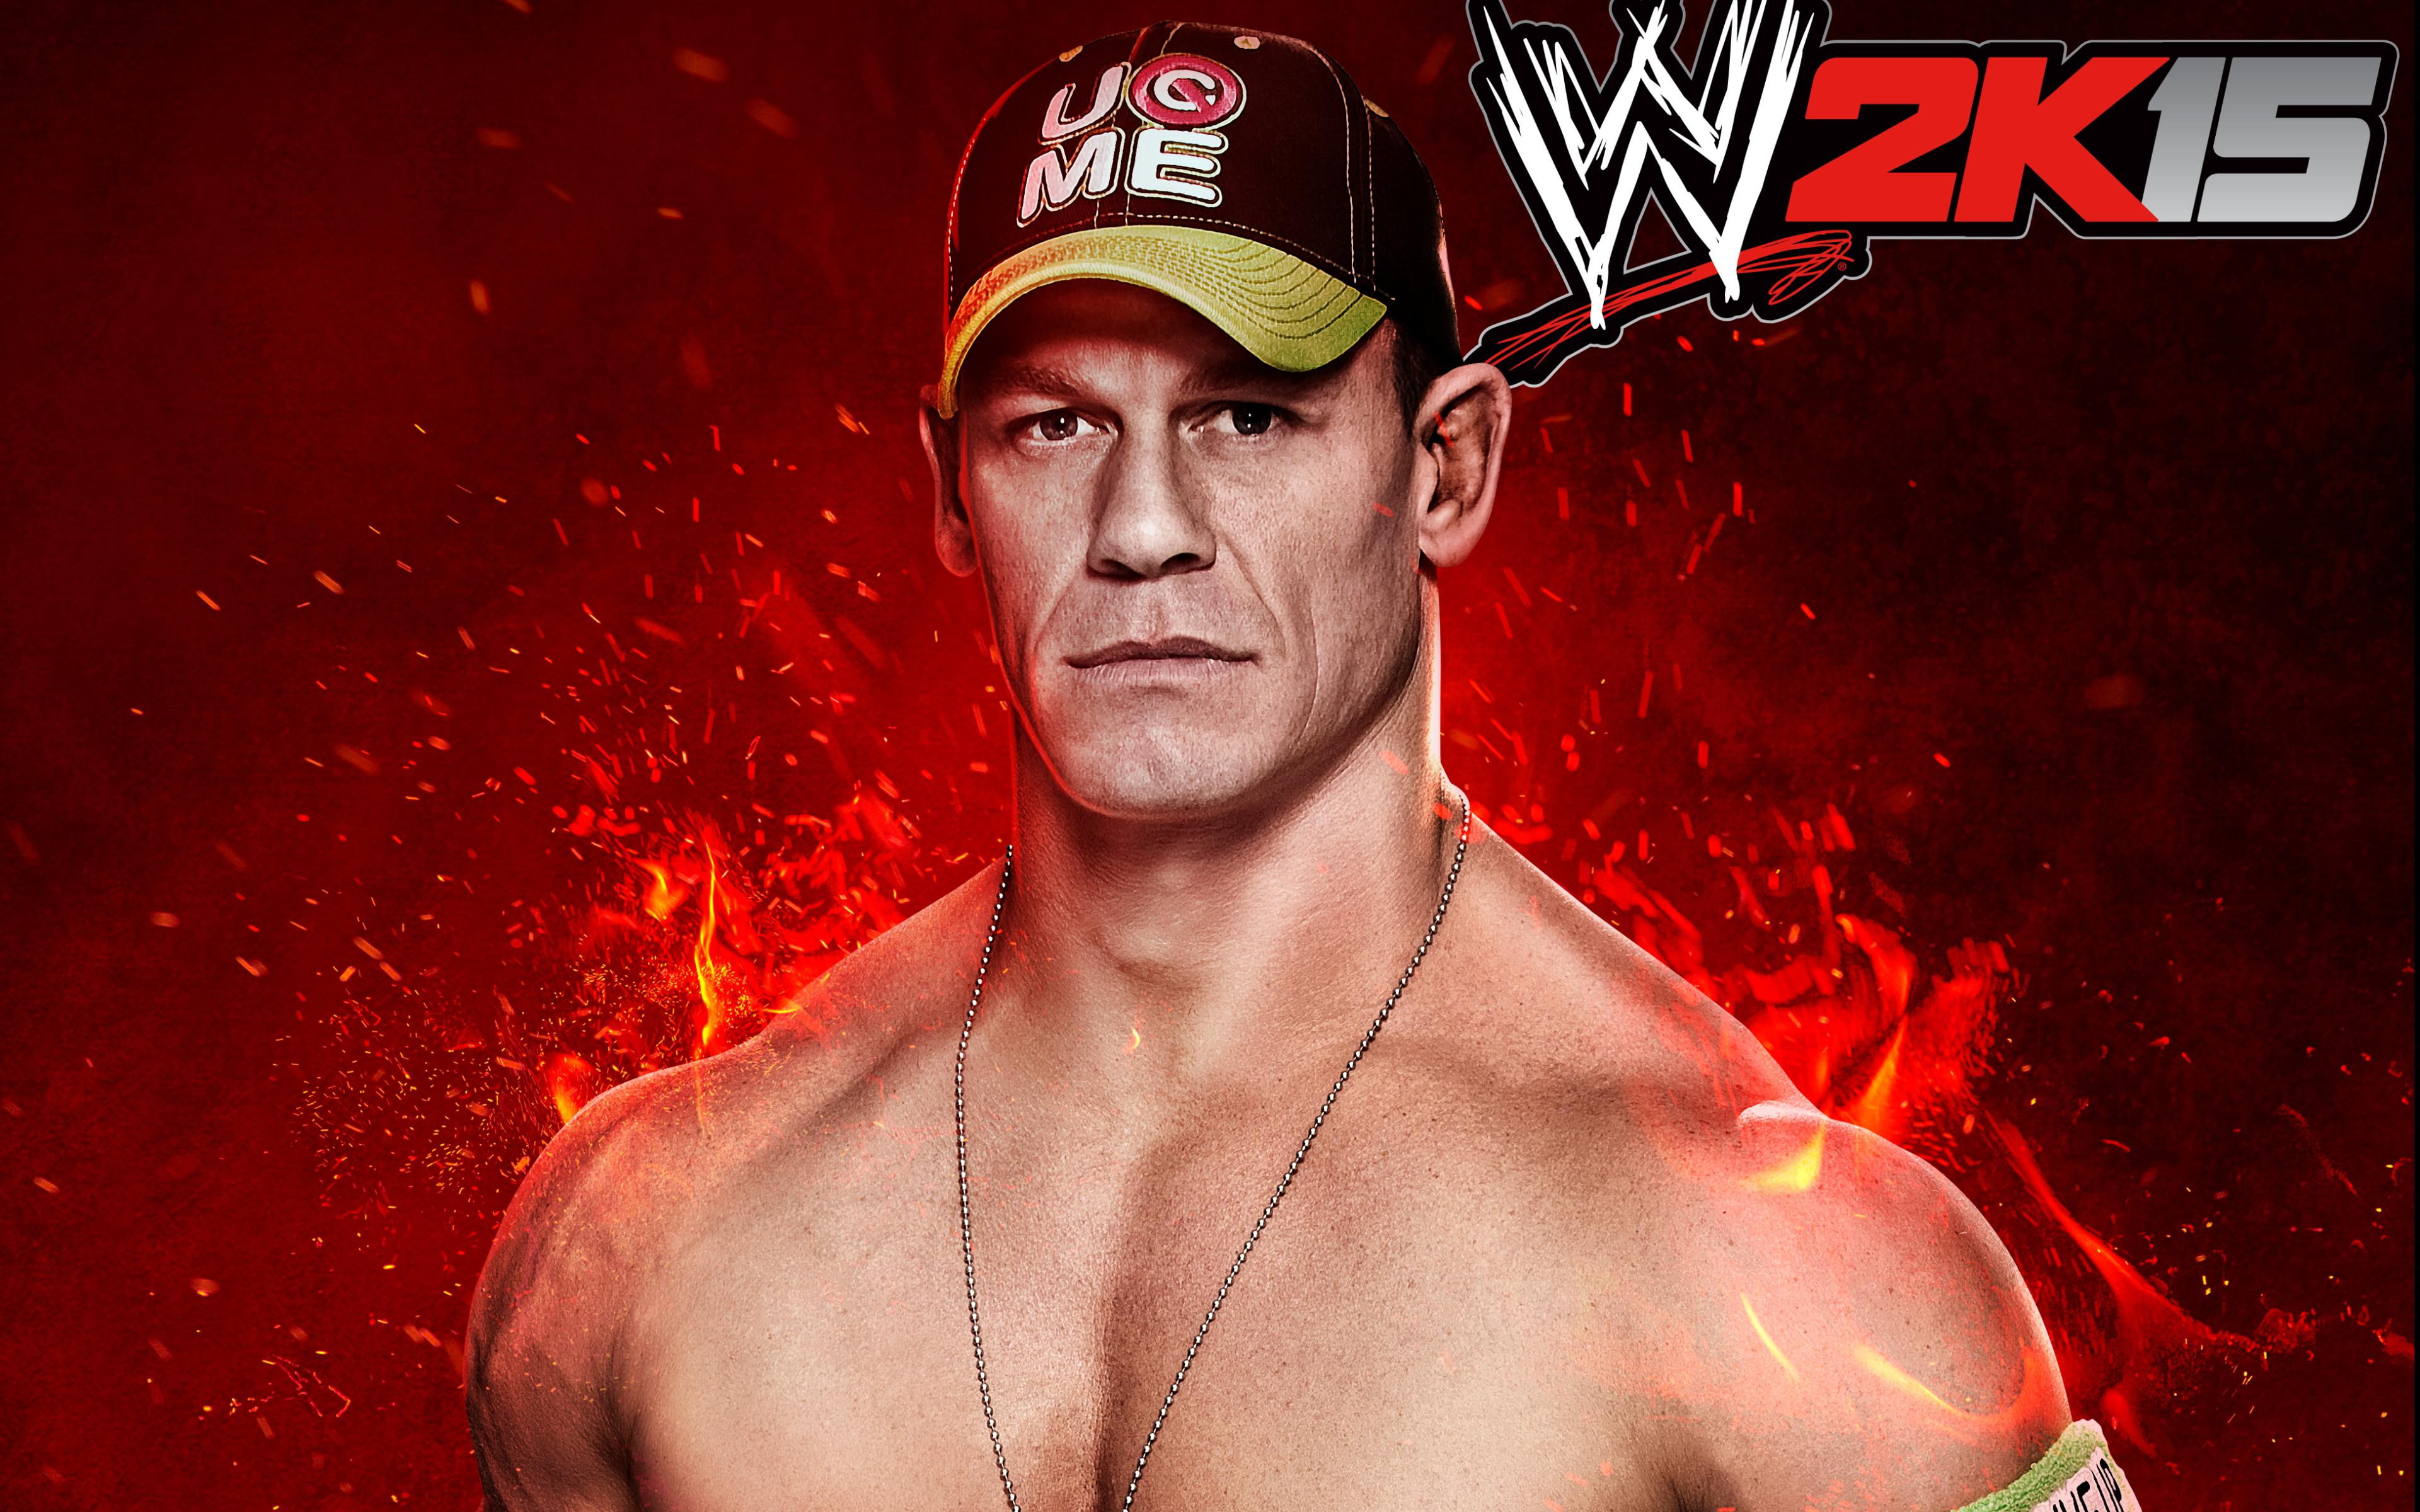 John Cena WWE 2K15, games, 2014